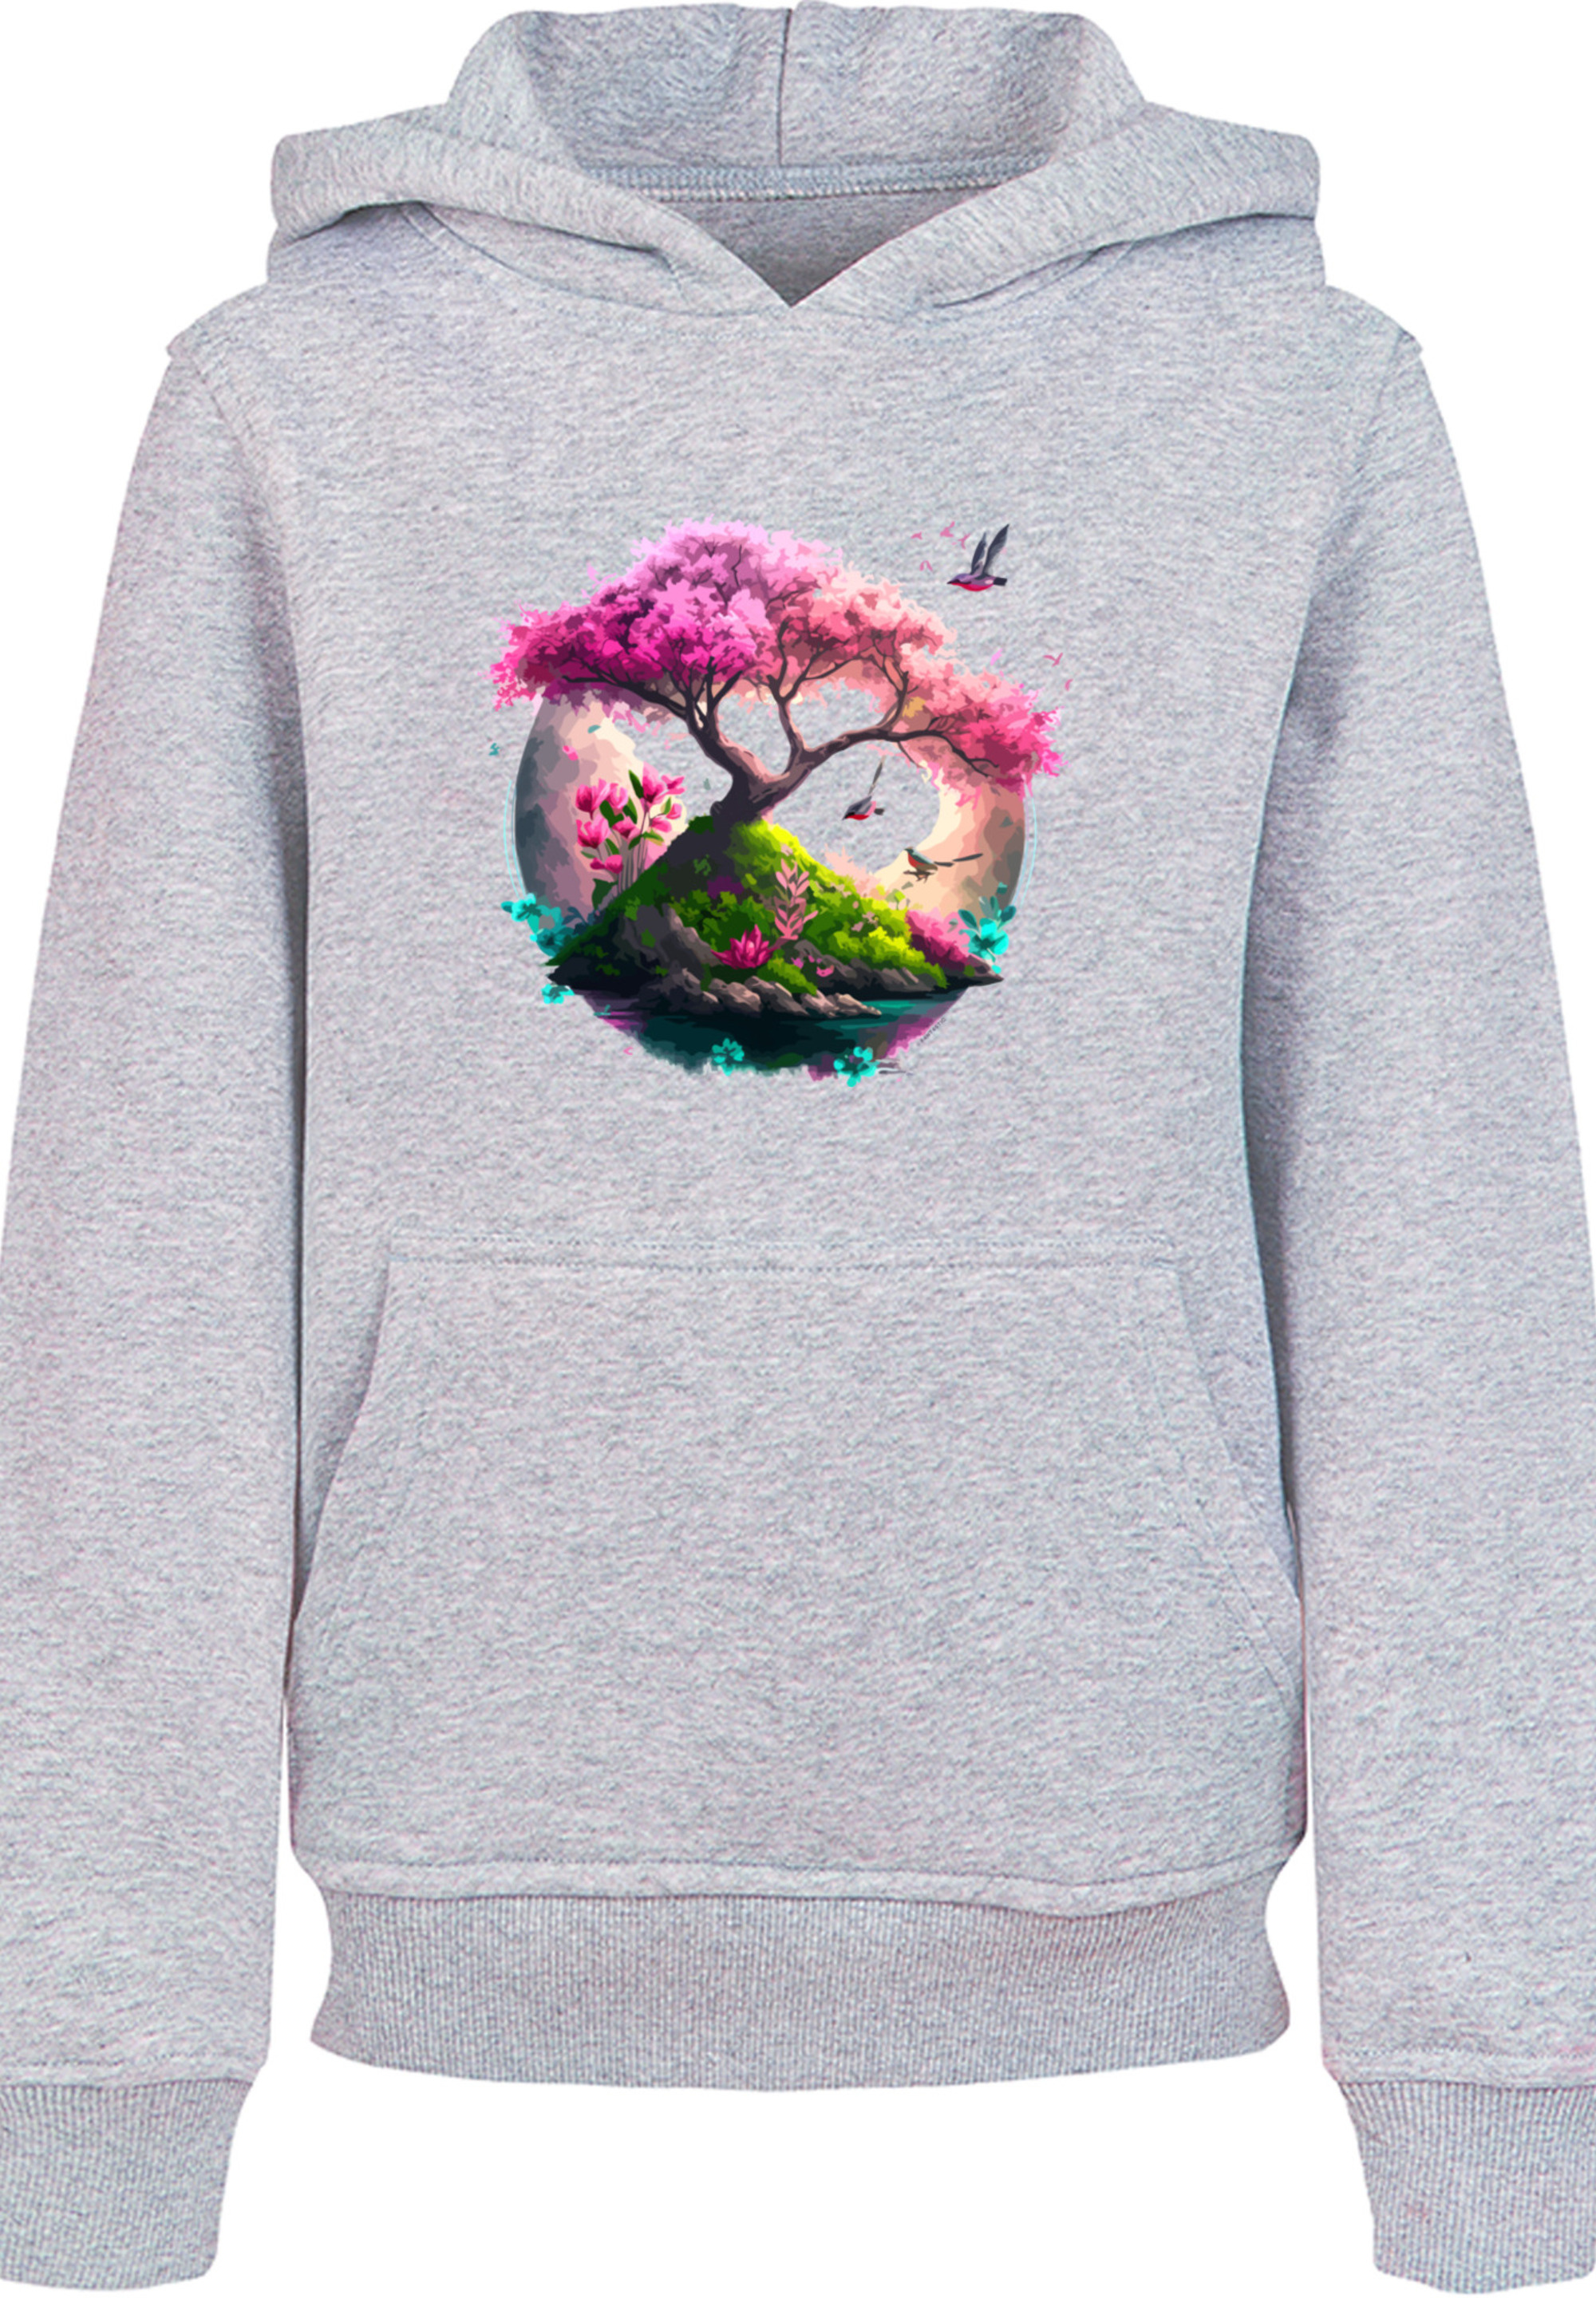 Пуловер F4NT4STIC Hoodie Kirschblüten Baum, цвет grau meliert